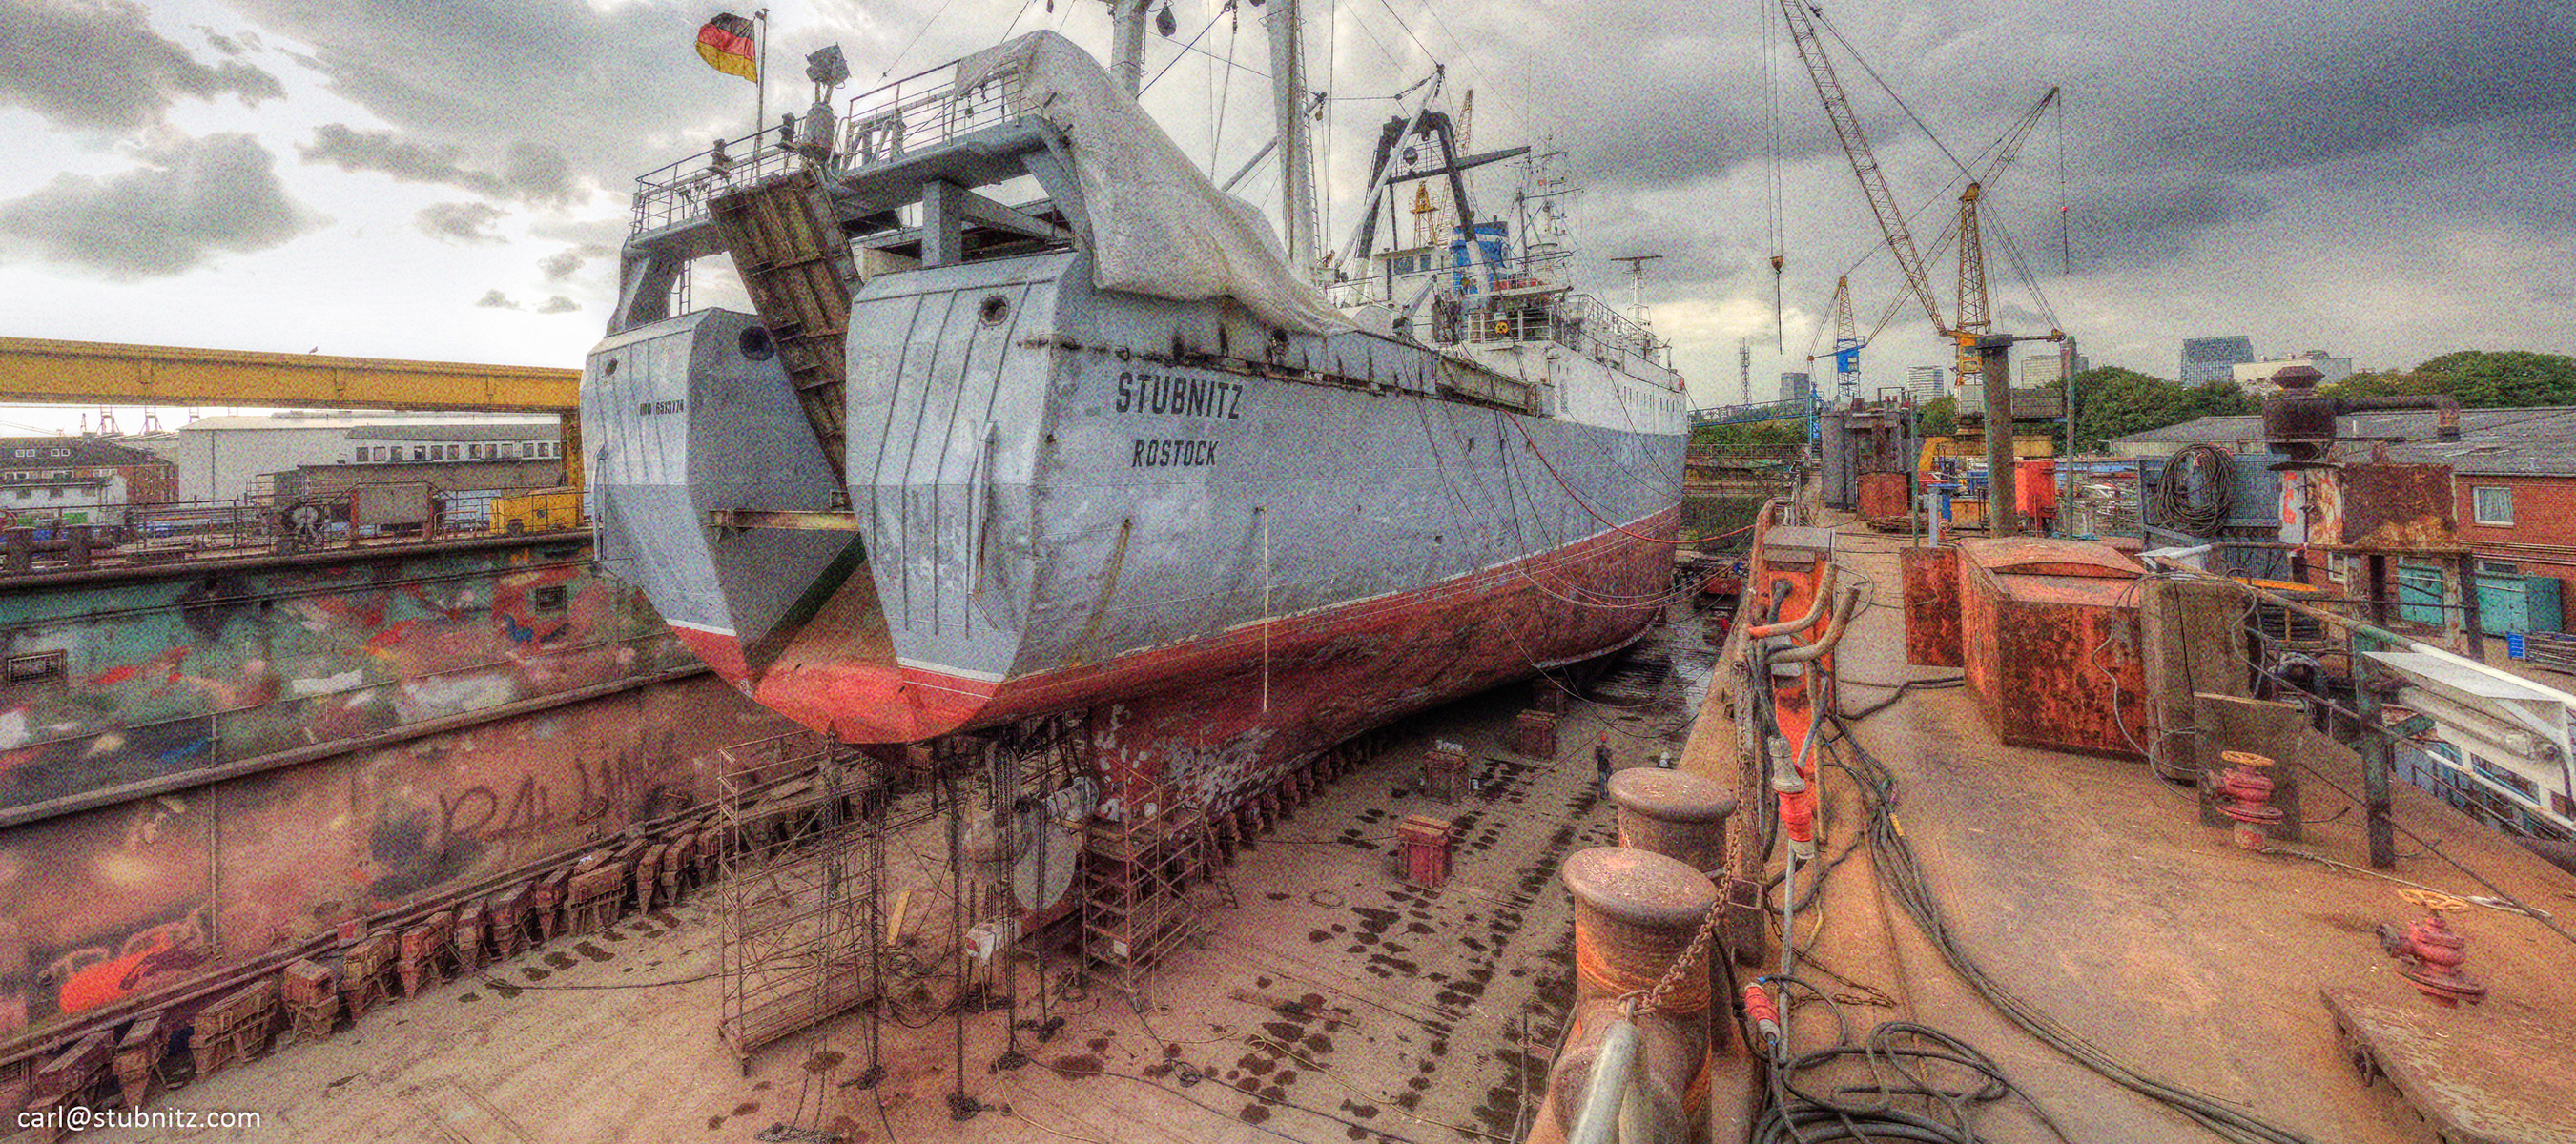 Die Stubnitz im Dock der Norderwerft in Hamburg 2014 von hinten. Drum herum Werftgelände und Kräne.